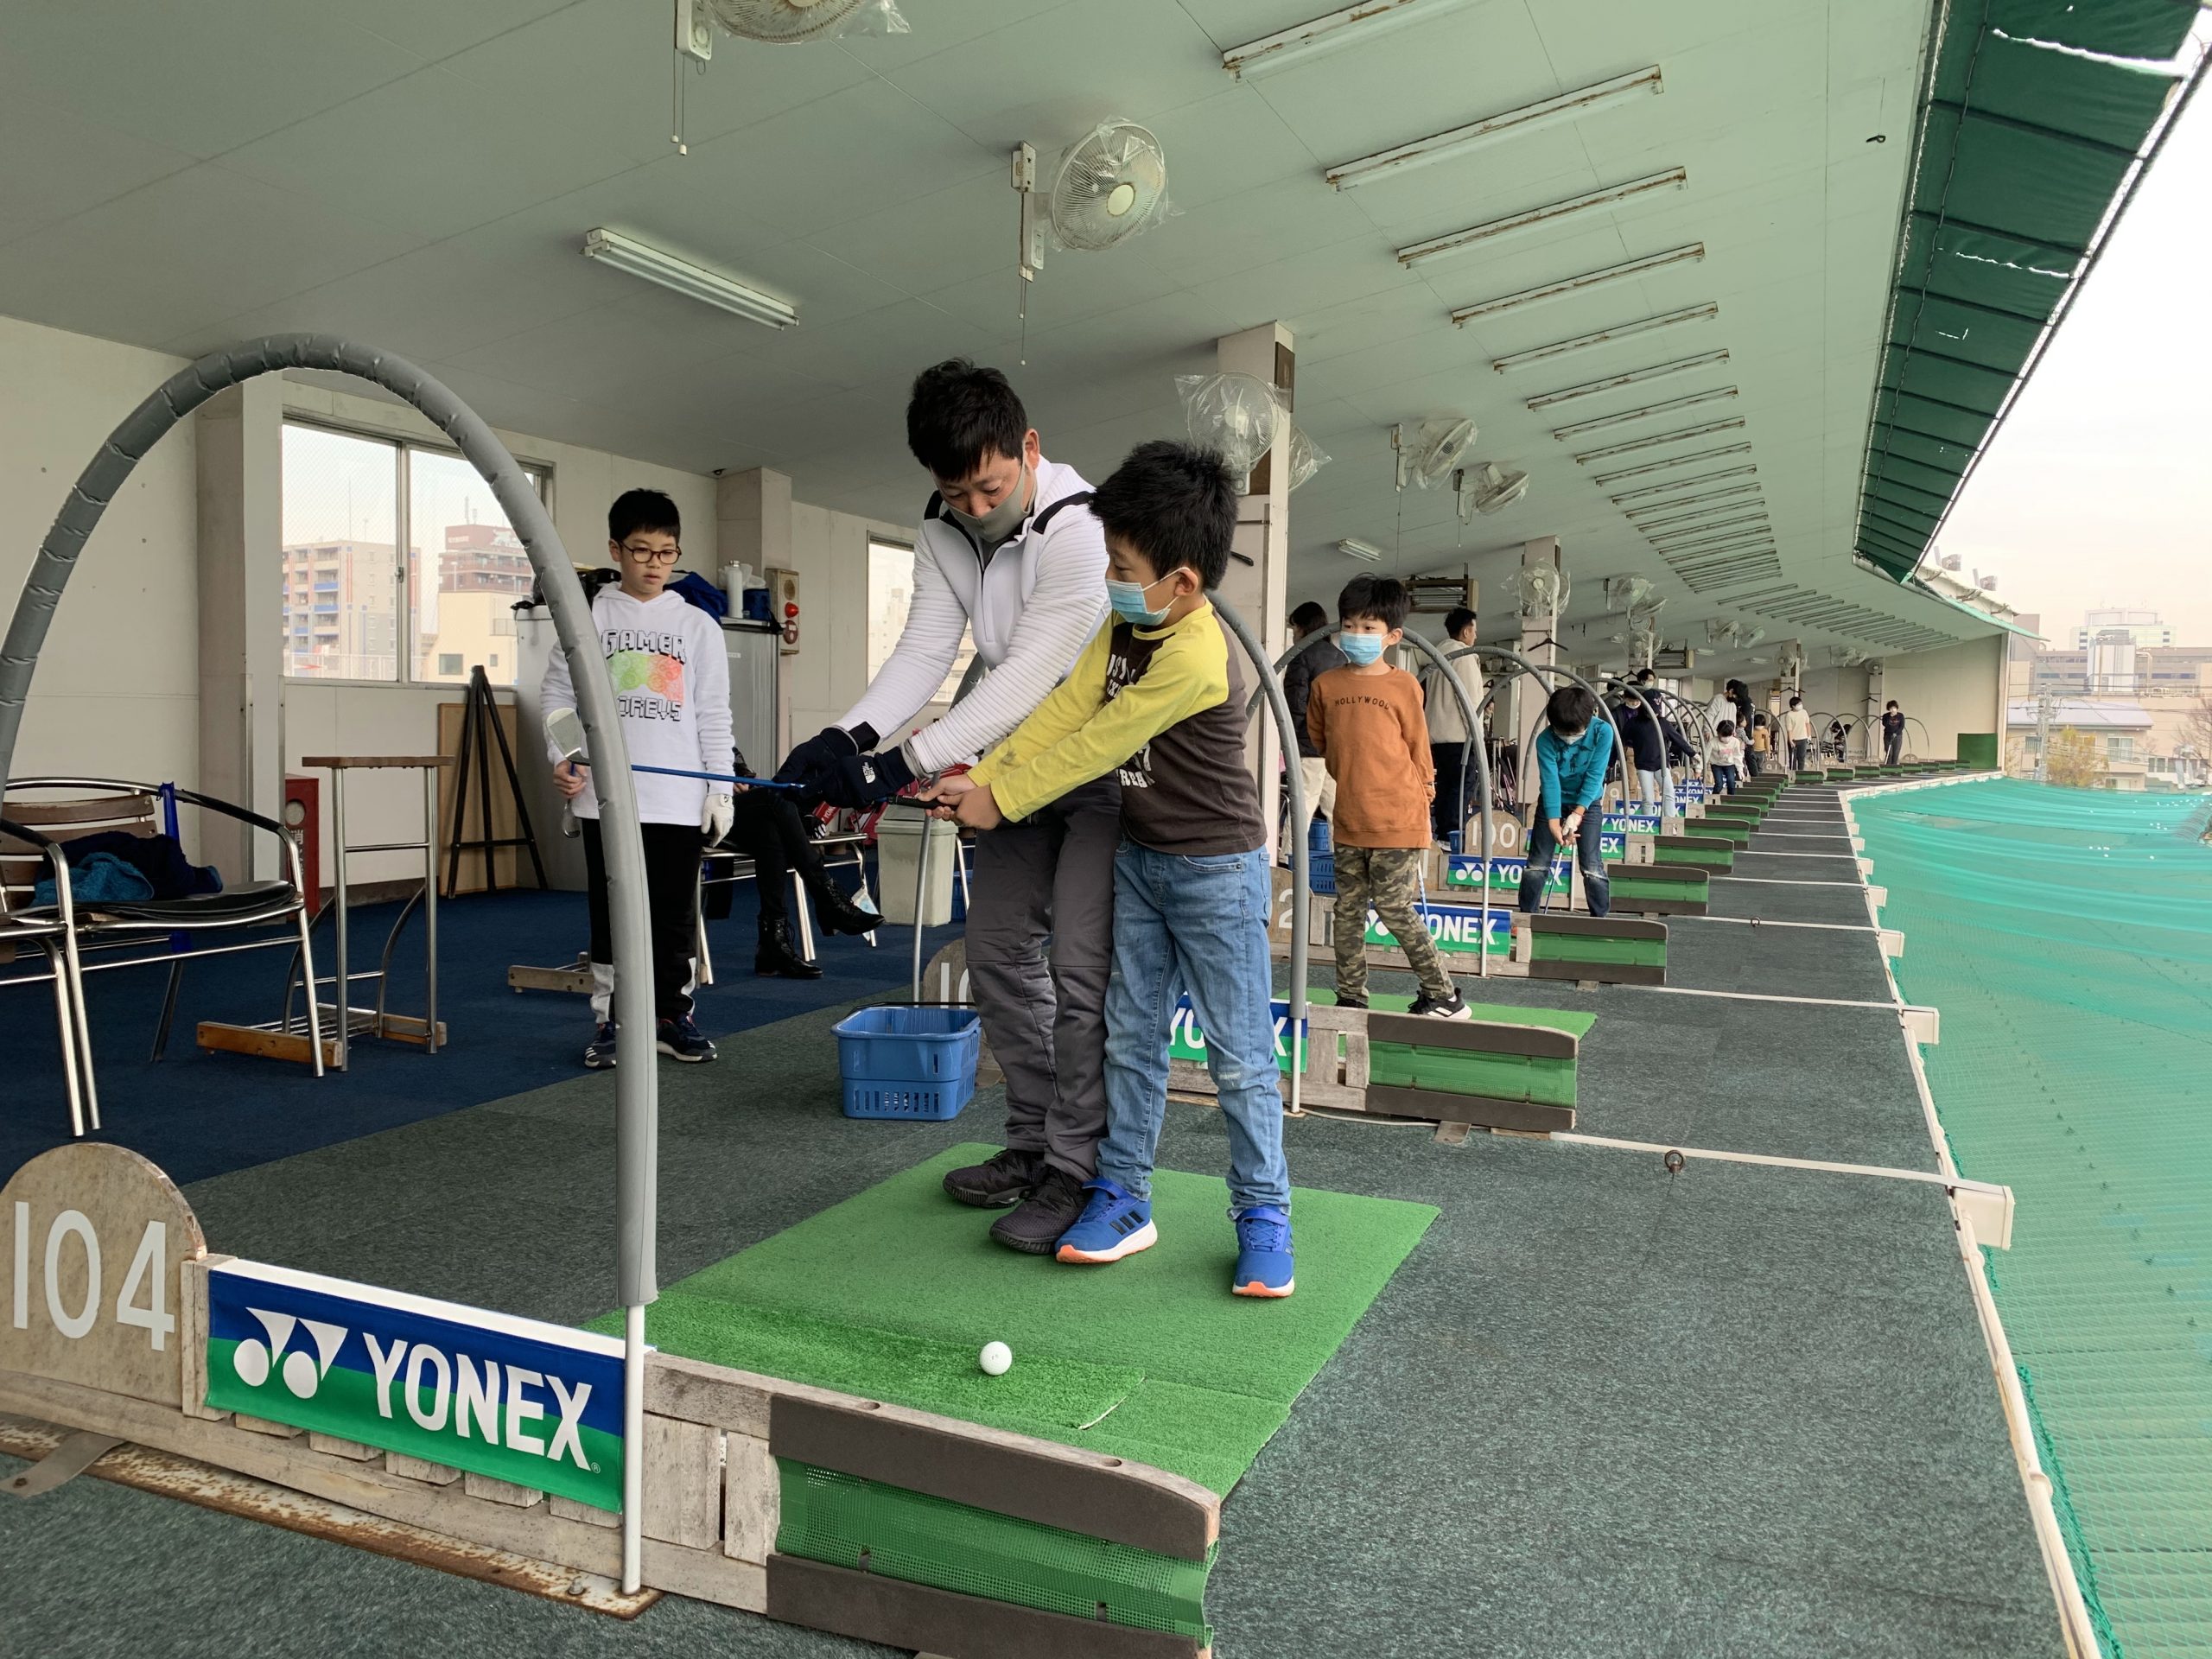 YJGA（ヨネックスジュニアゴルフアカデミー） 川崎平間校の雰囲気がわかる写真